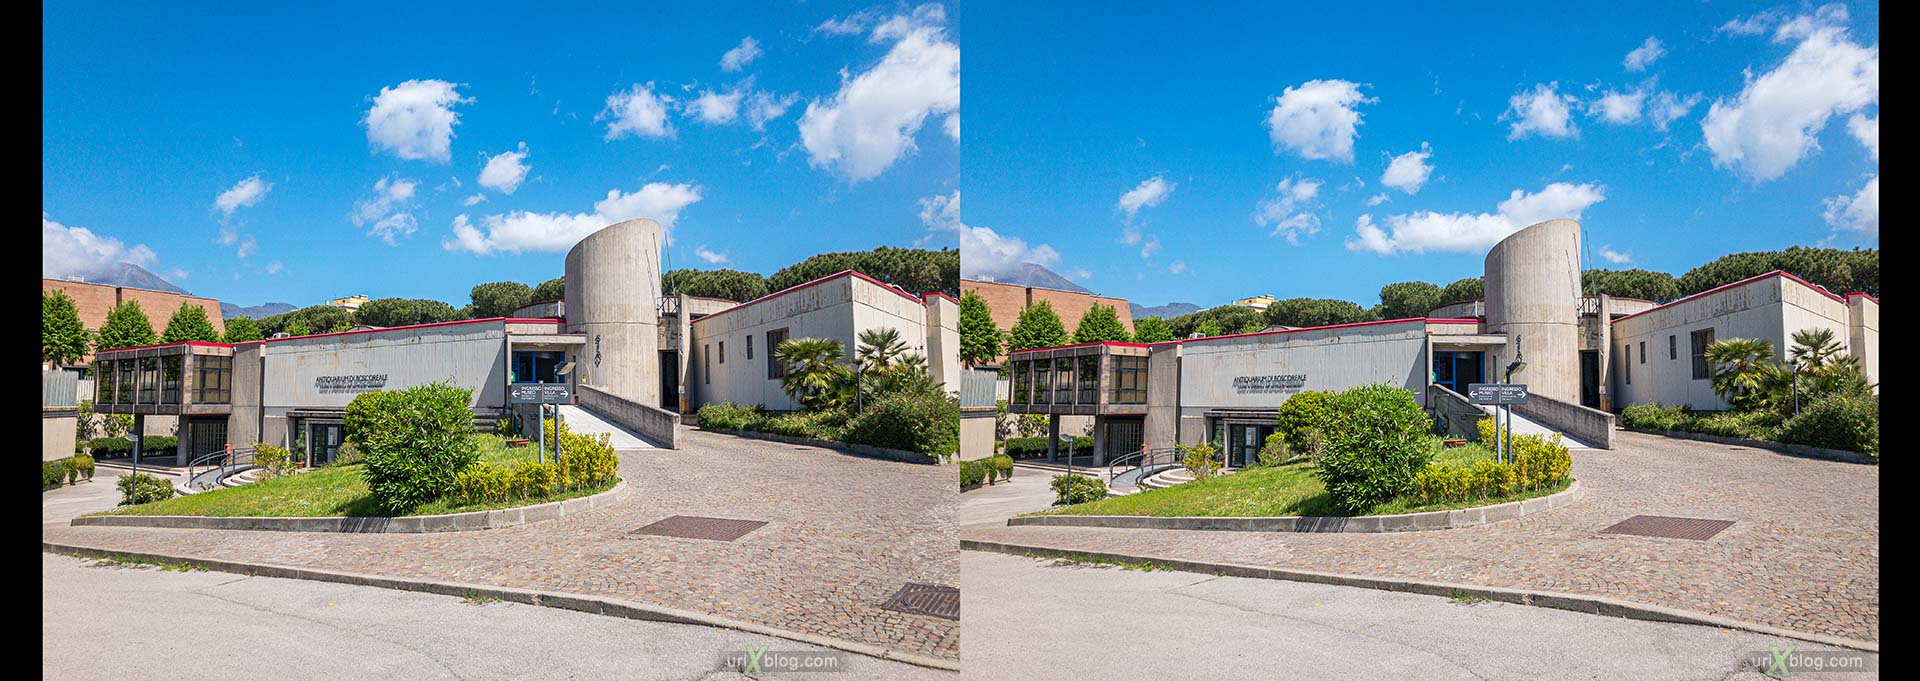 Археологический музей Боскореале, вилла Регина, Боскореале, Помпеи, Италия, 3D, перекрёстная стереопара, стерео, стереопара